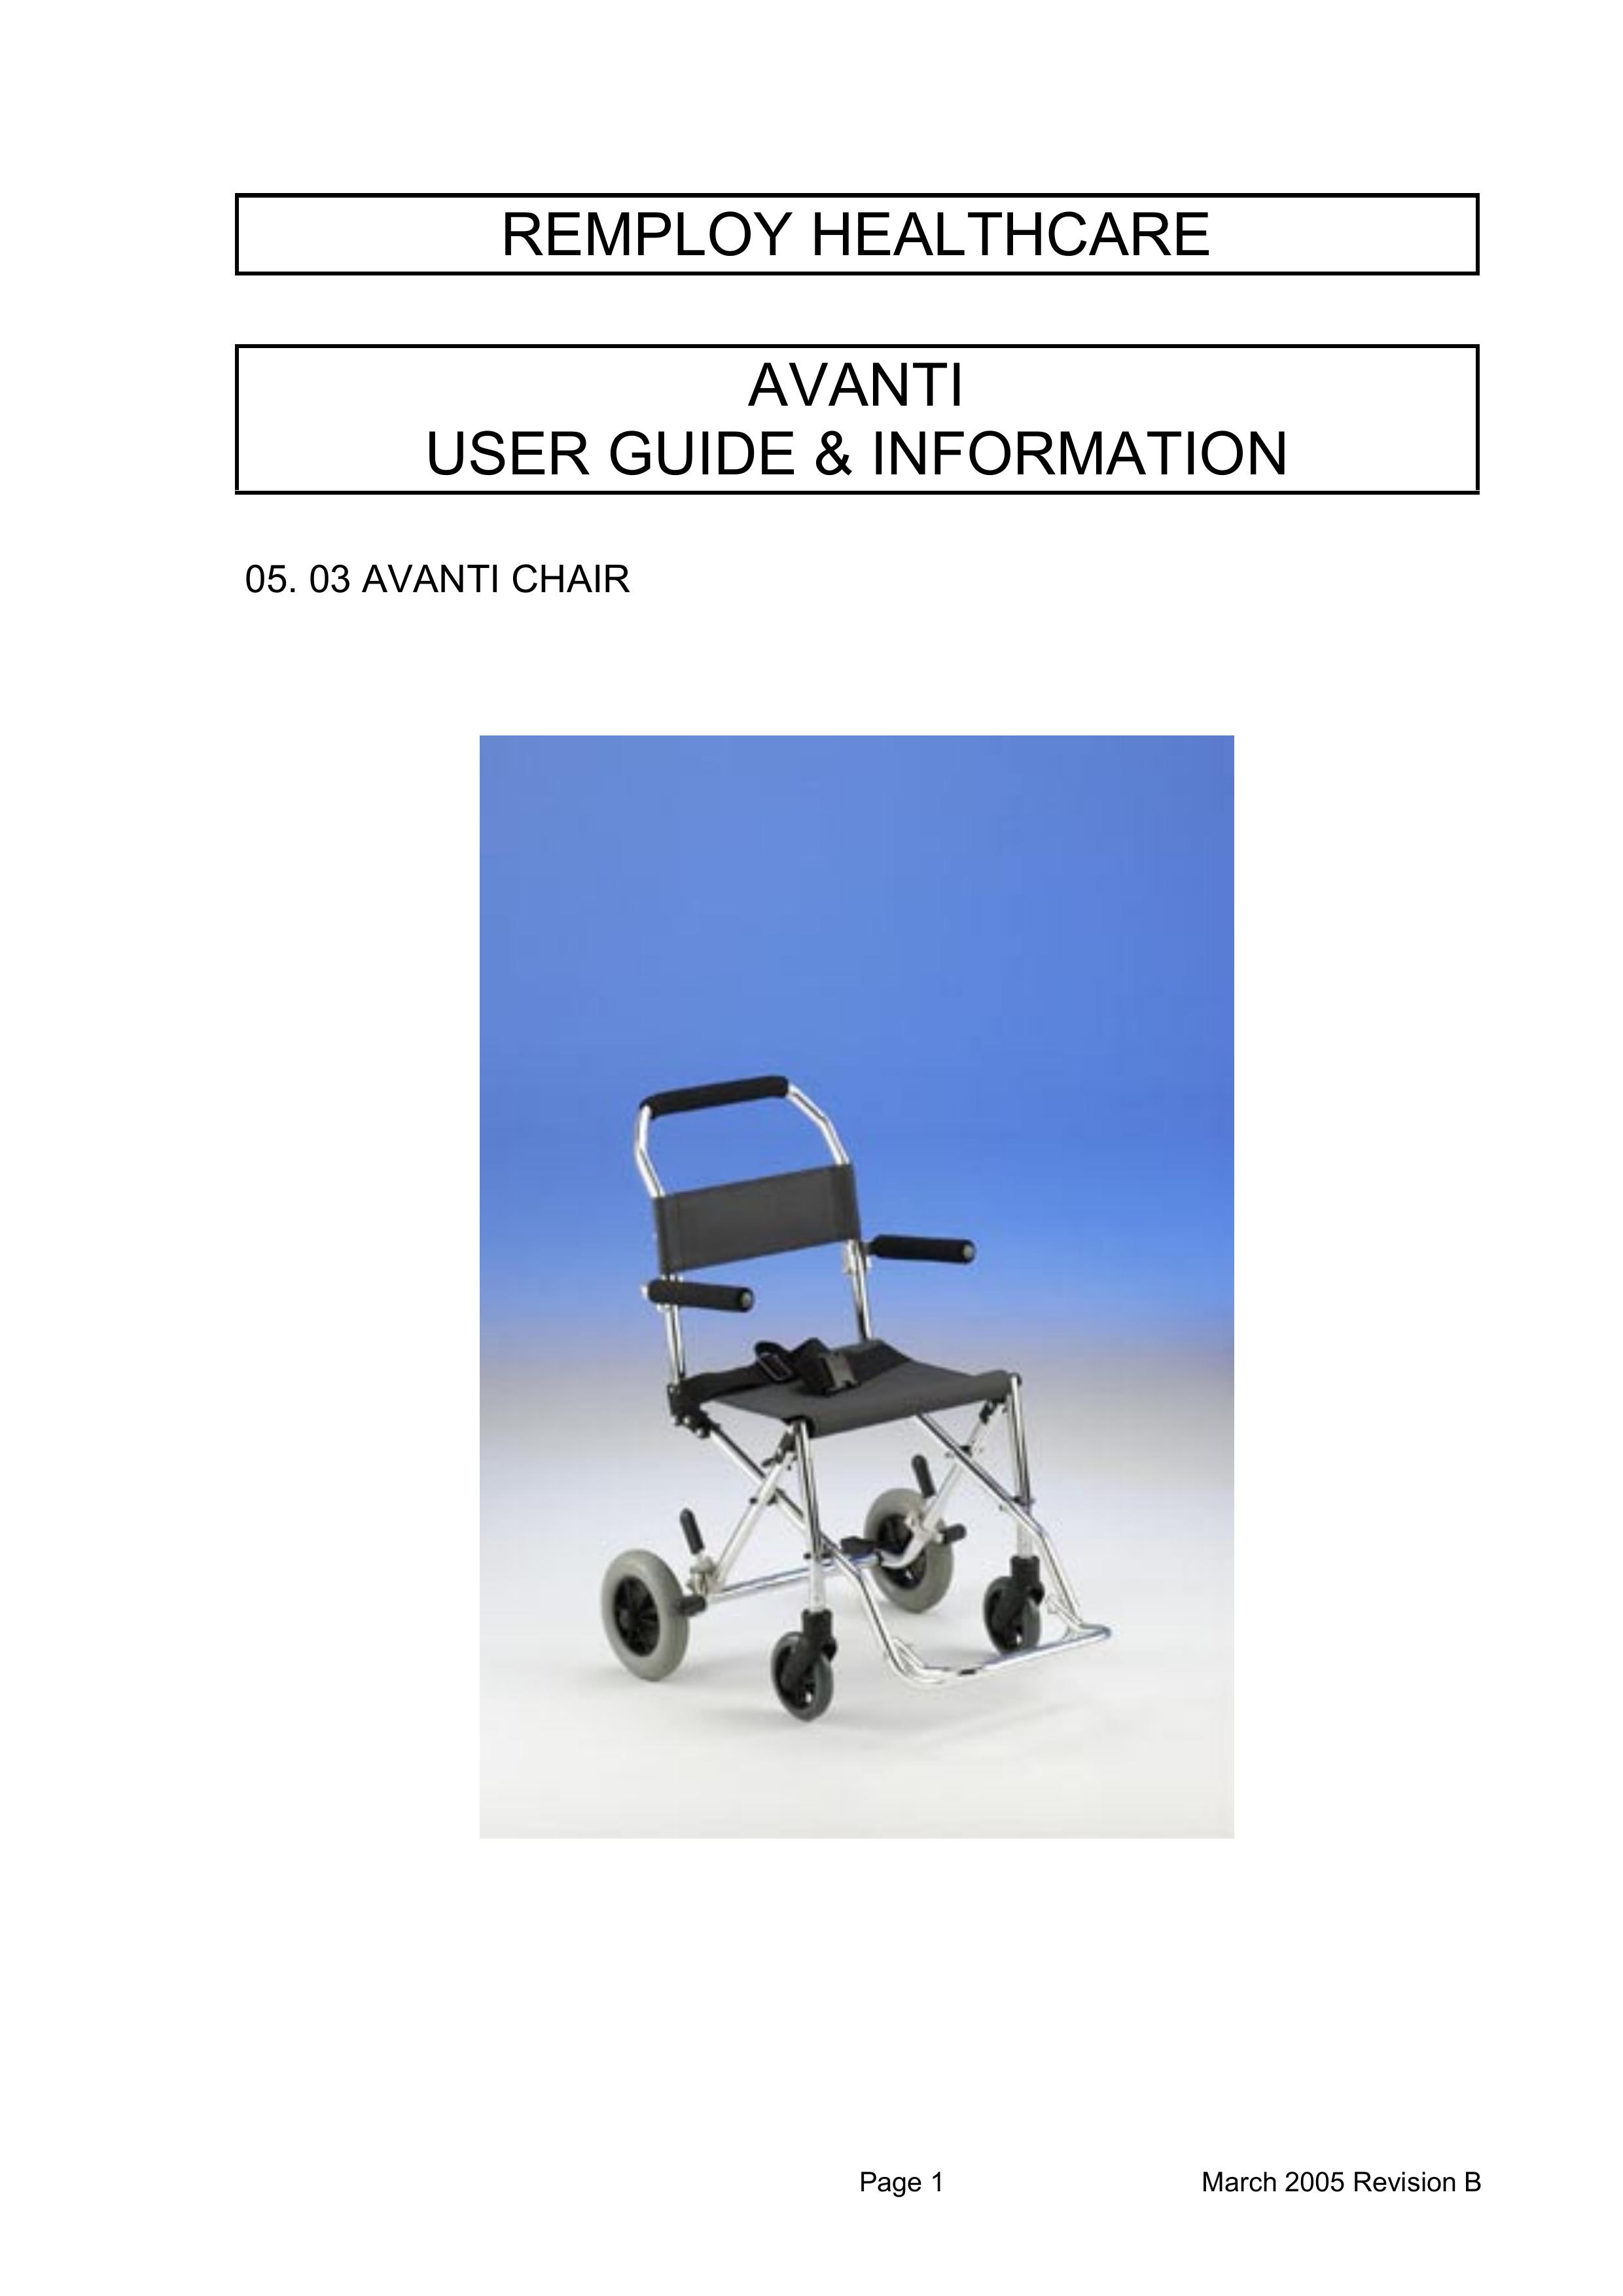 Avanti AVANTI CHAIR Mobility Aid User Manual